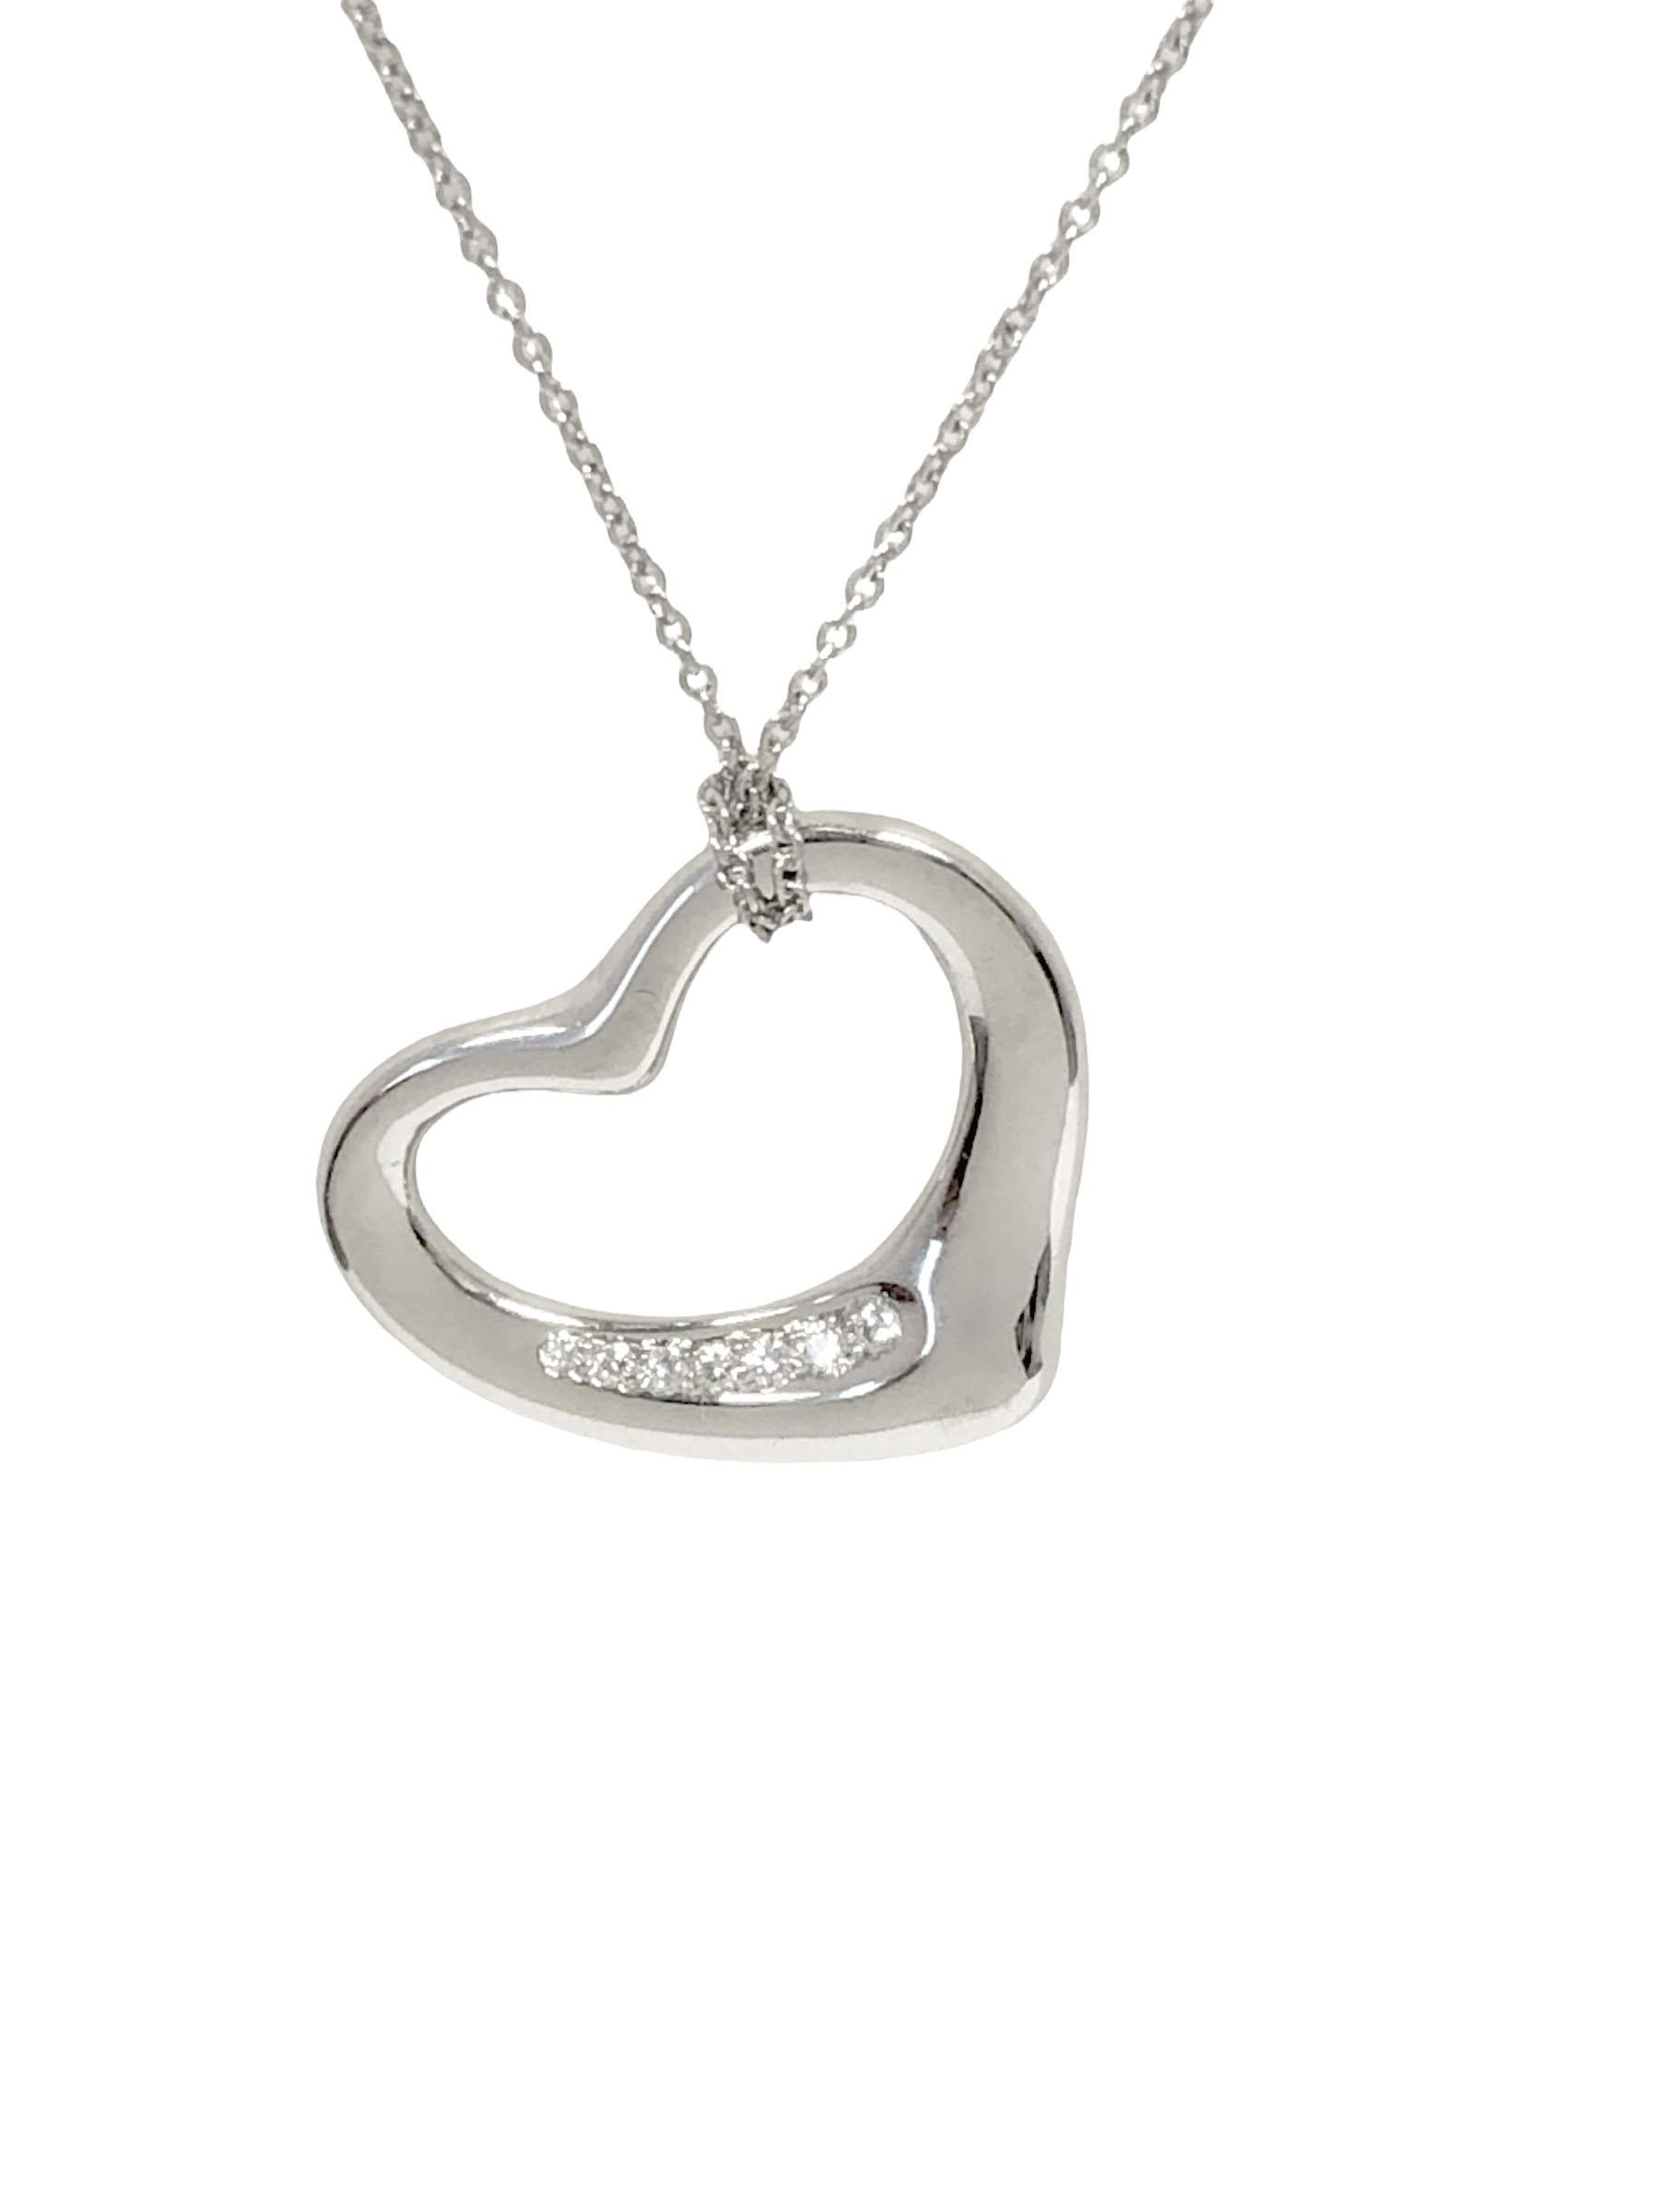 tiffany heart necklace 2000s